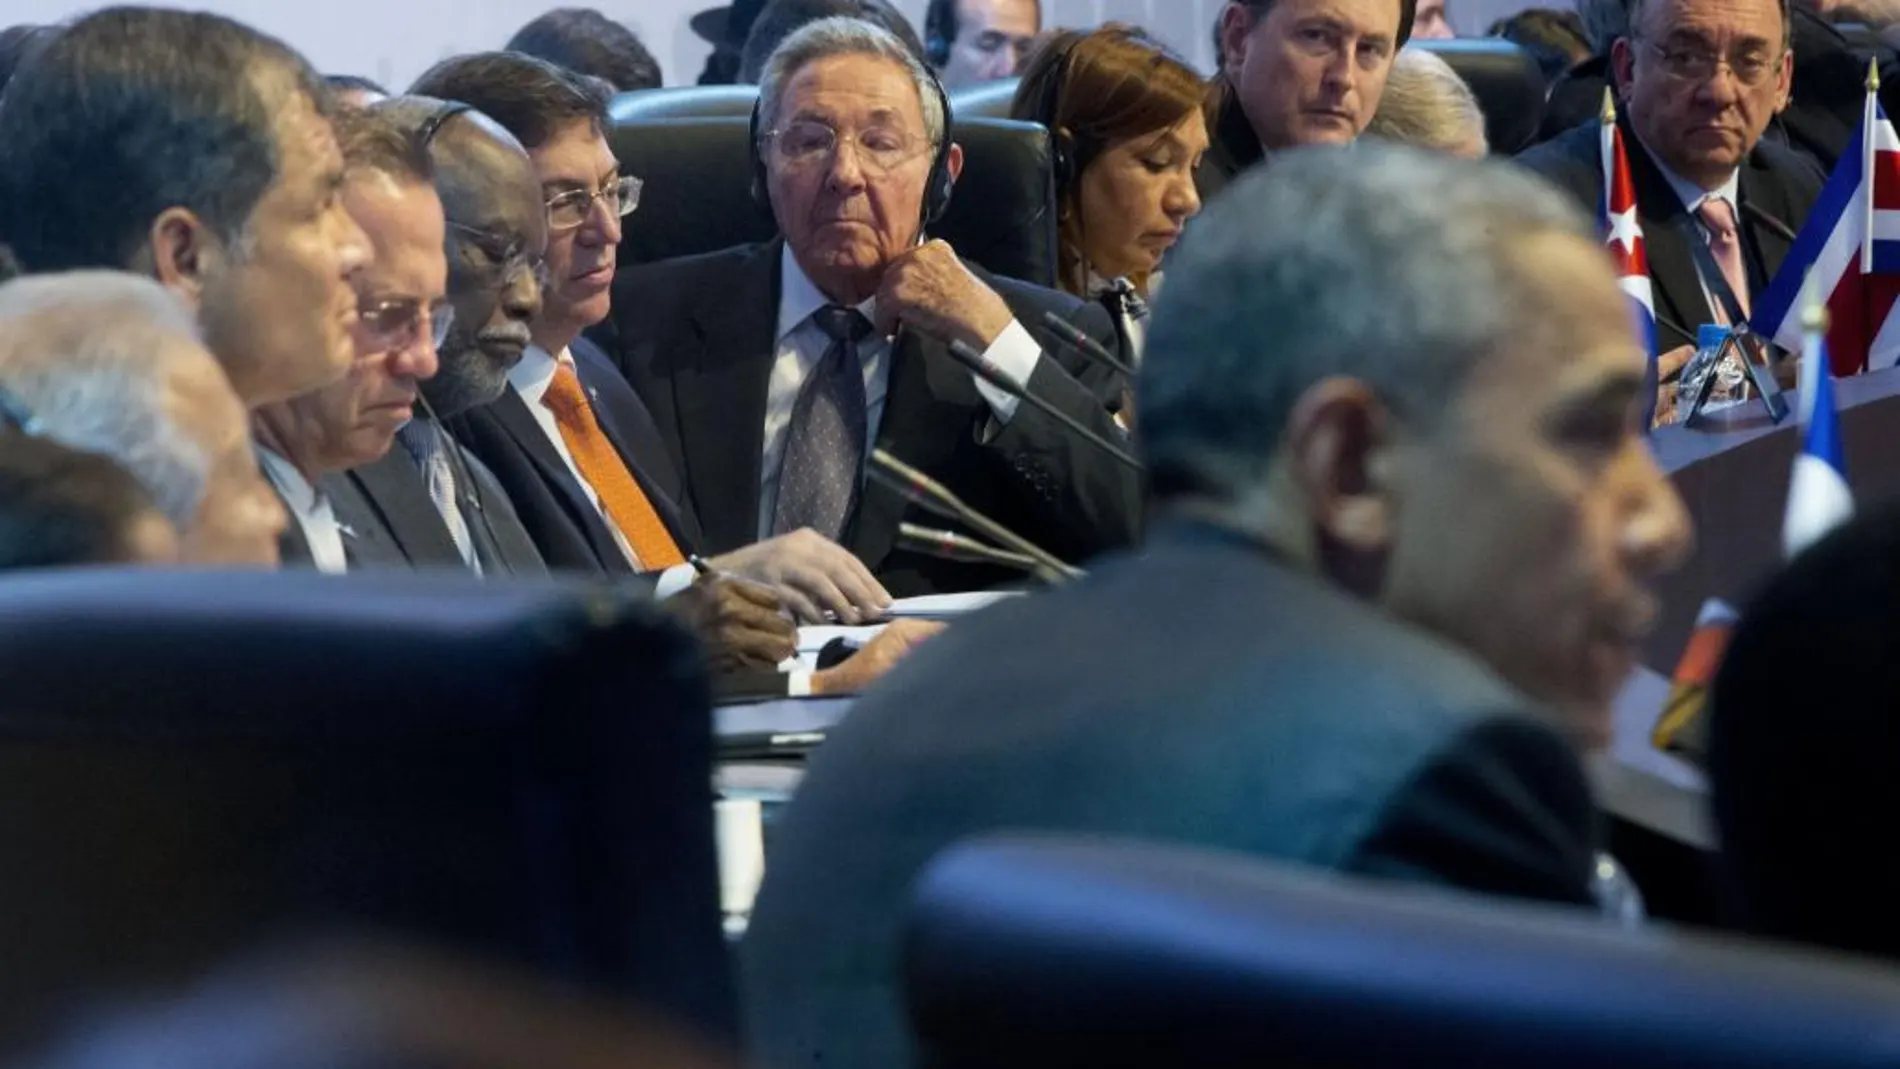 Raúl Castro escucha a Obama durante su intervención en la cumbre